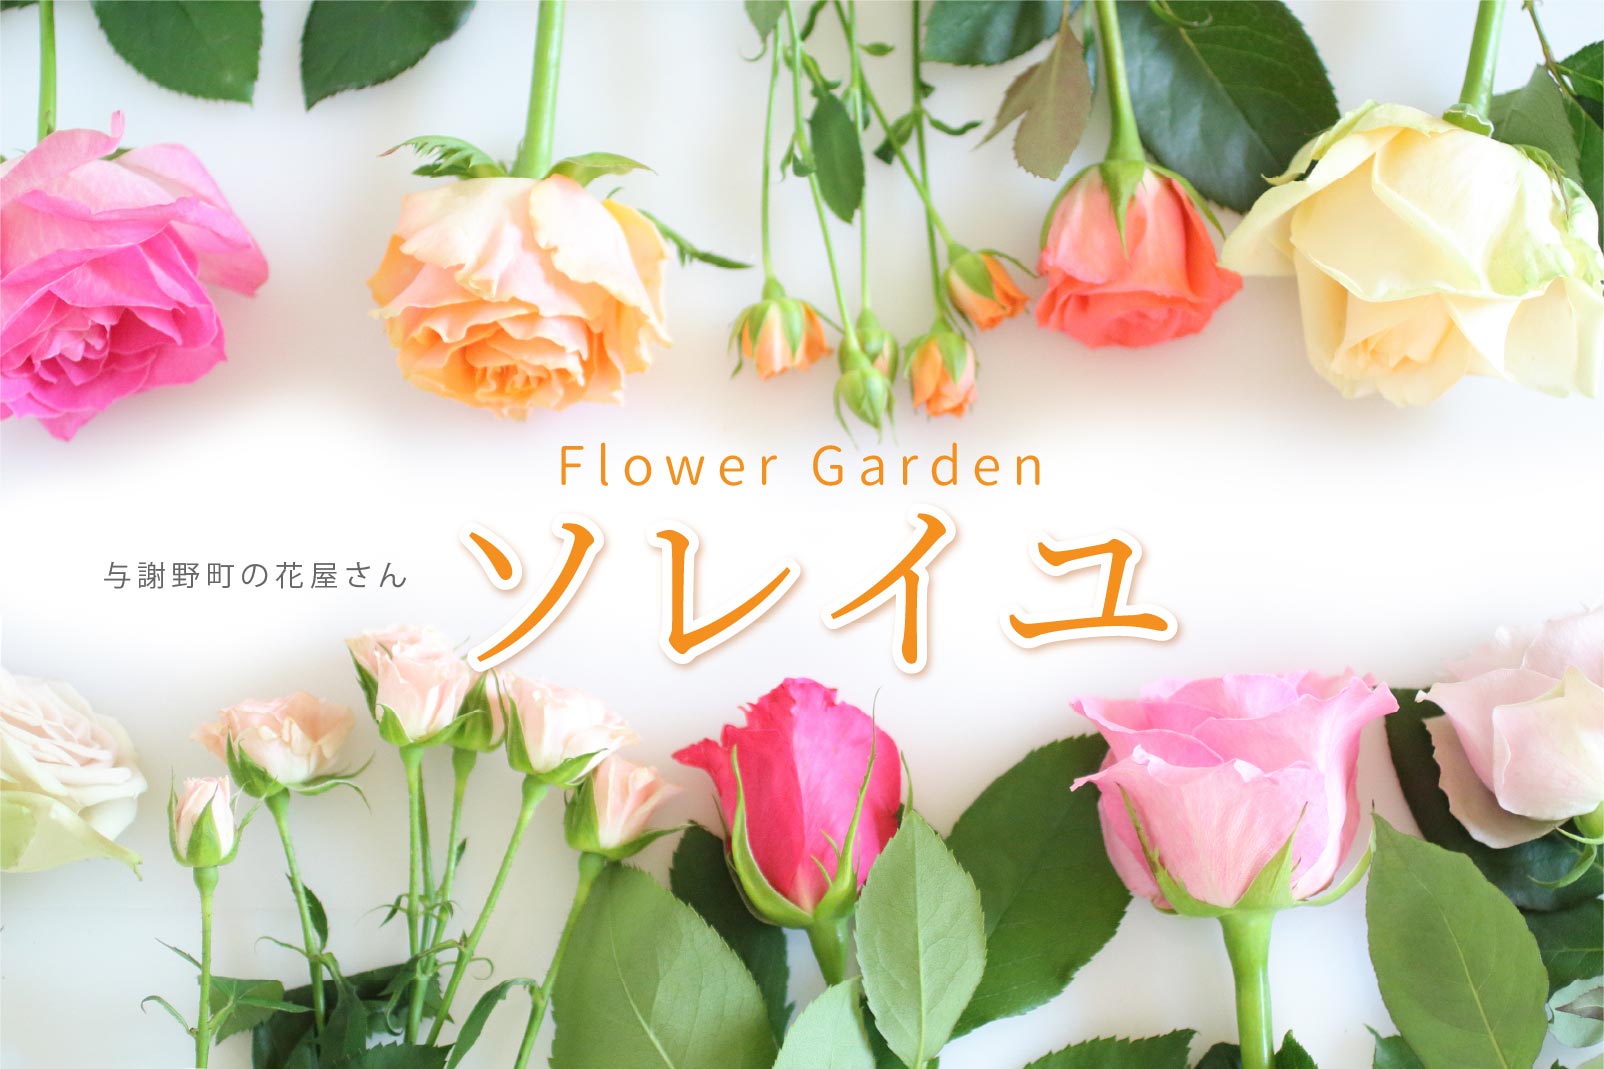 Flower Garden ソレイル